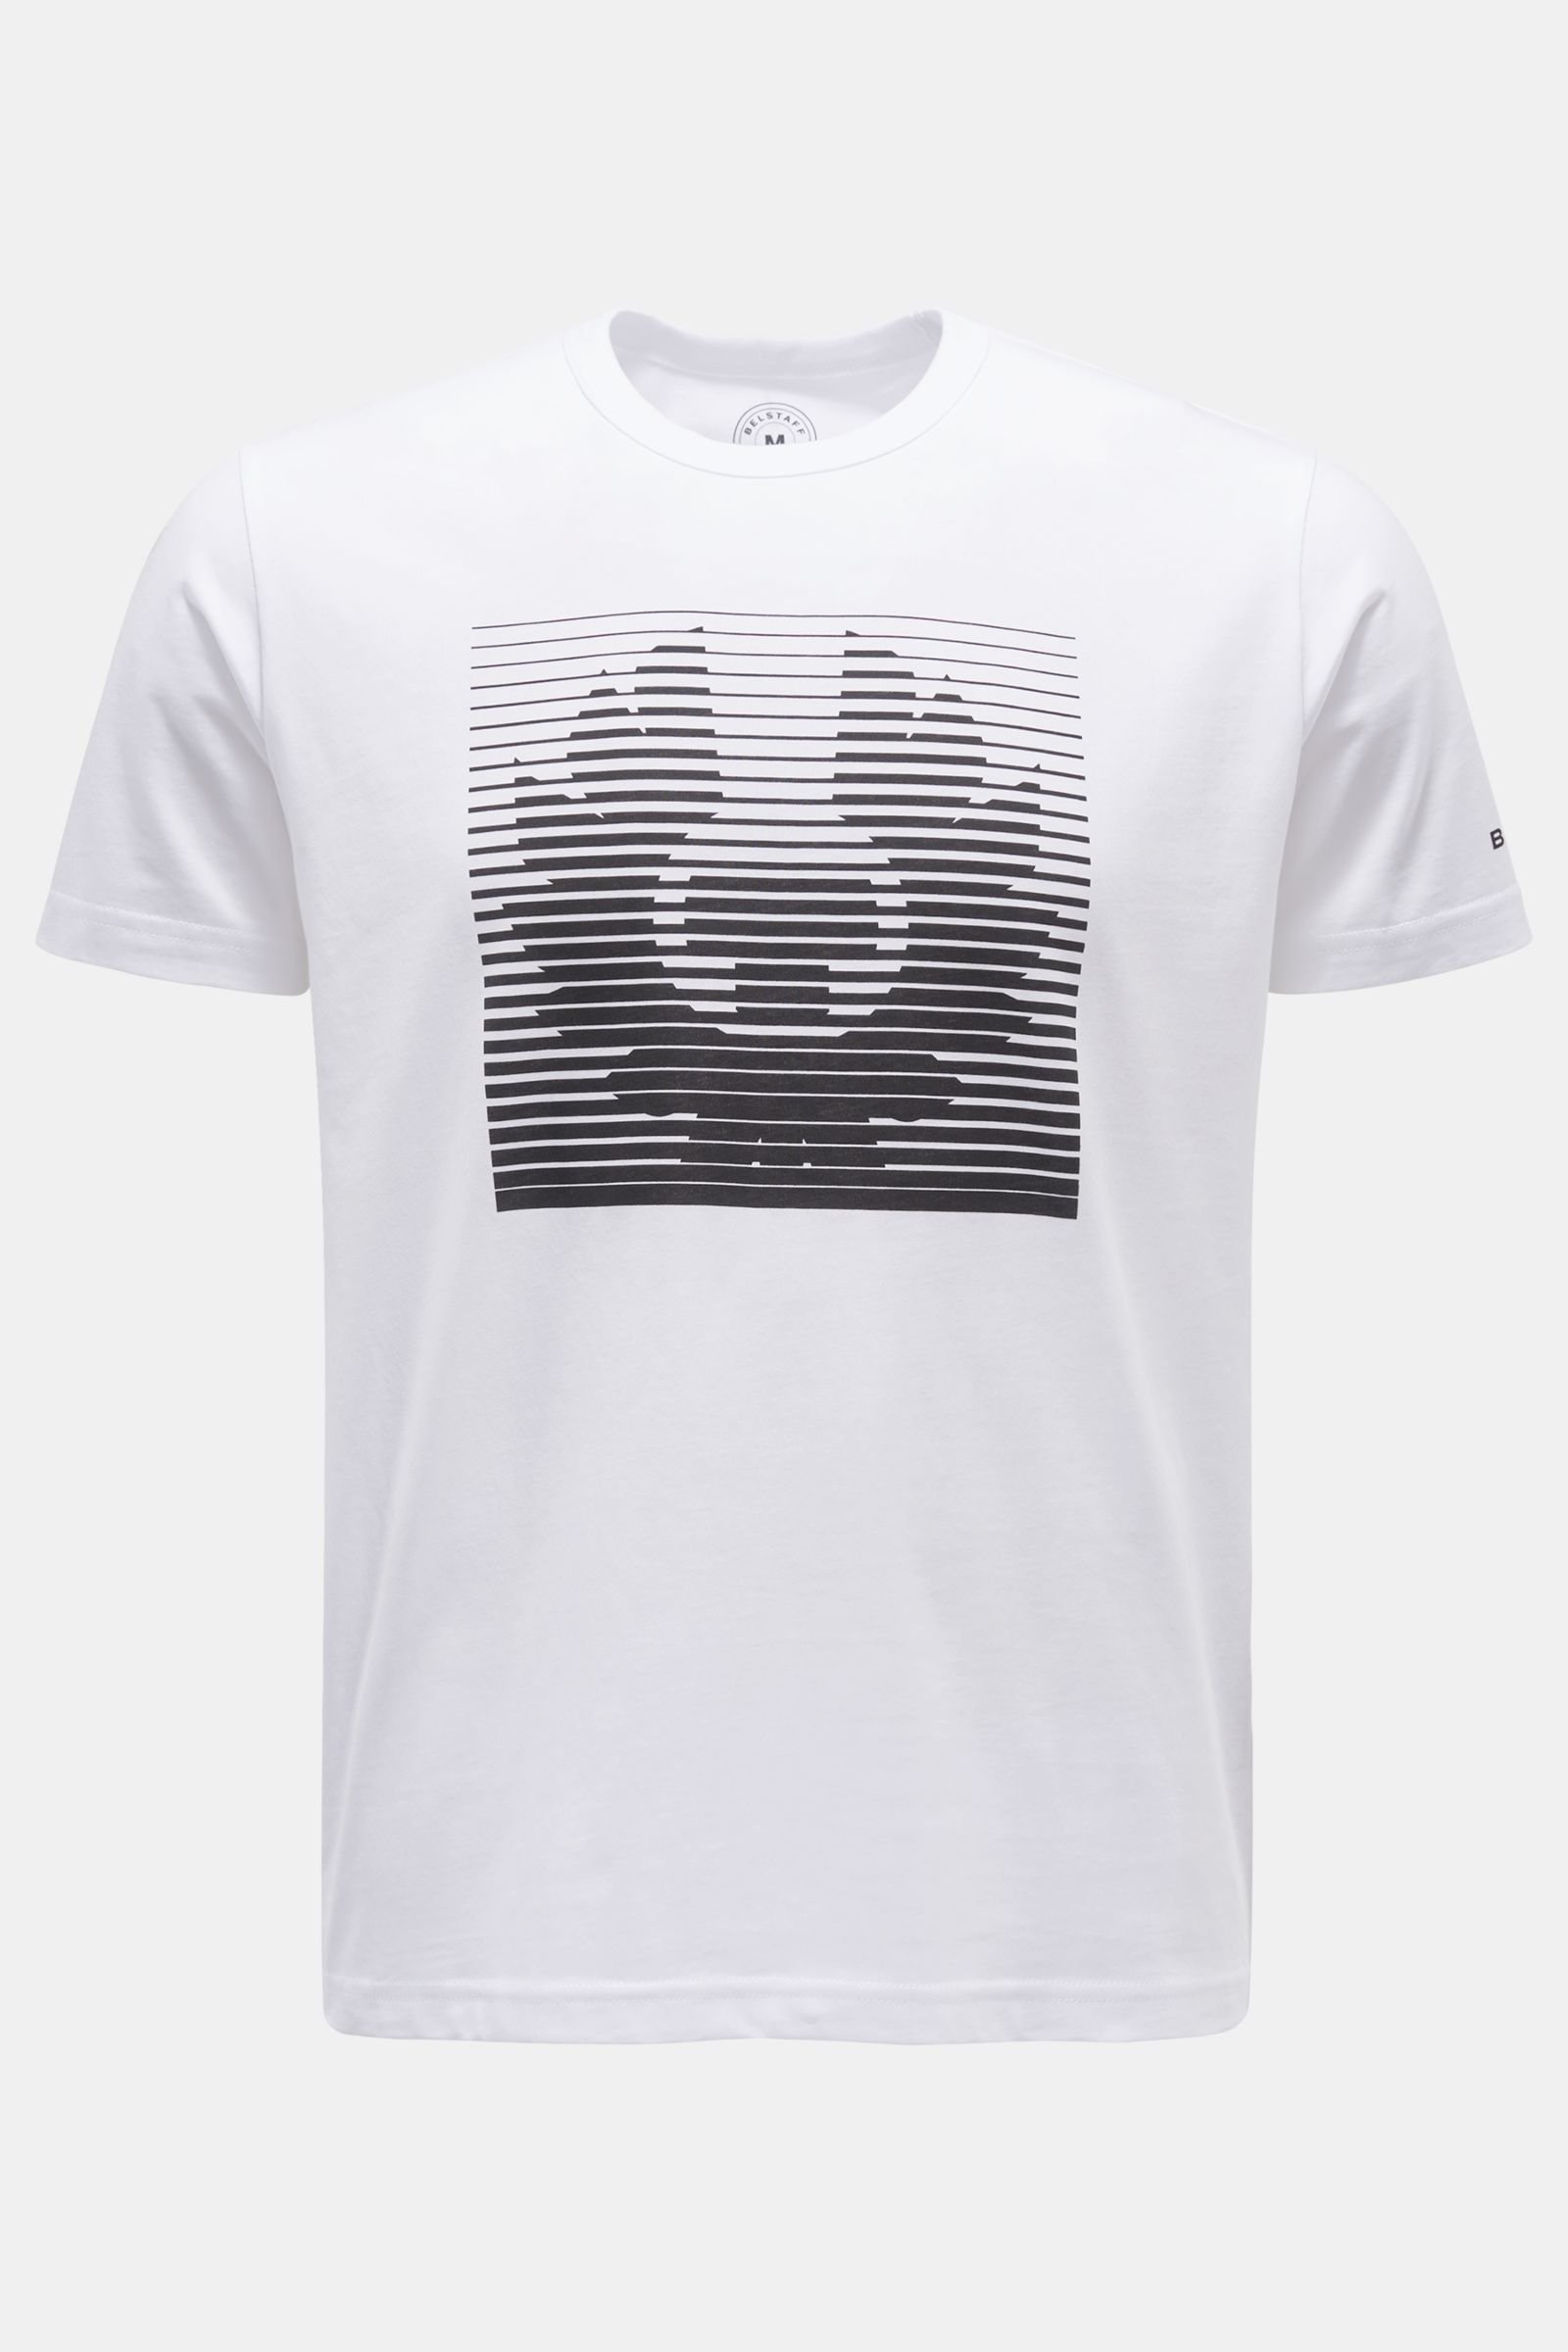 Rundhals-T-Shirt 'Get In Line' weiß